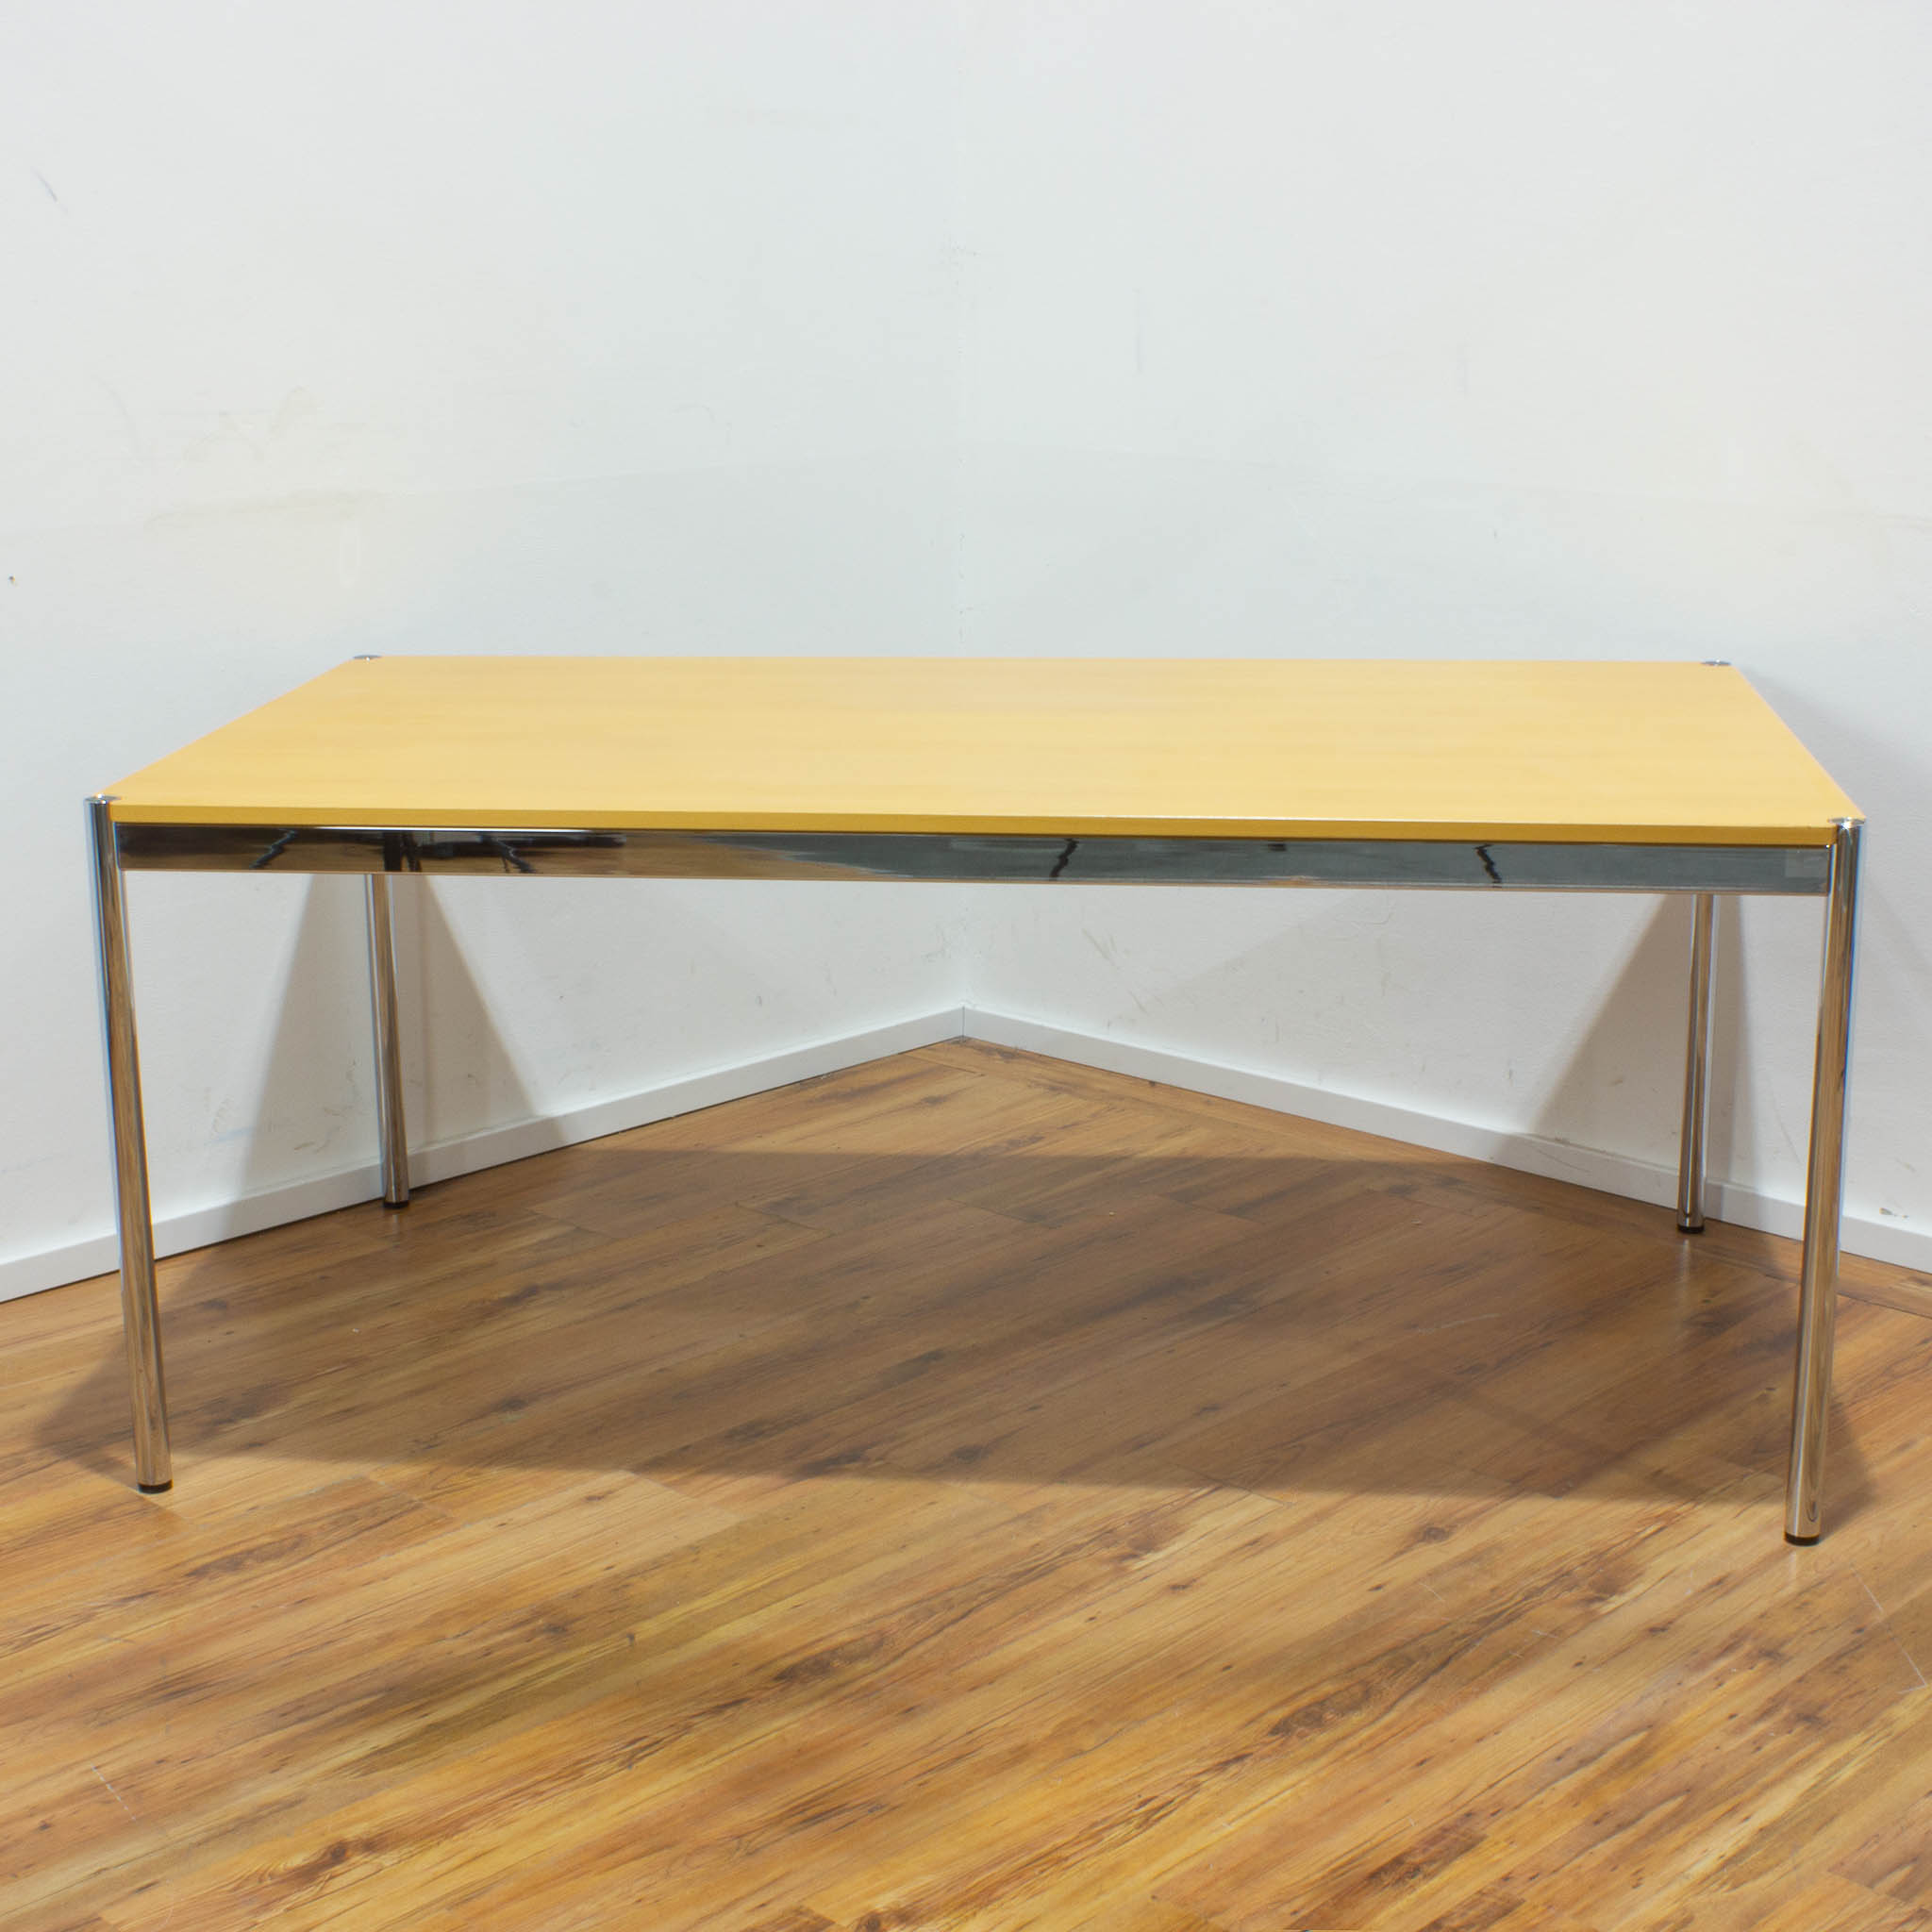  USM Haller Schreibtisch - Tischplatte buche - gebraucht - 175 x 100 cm